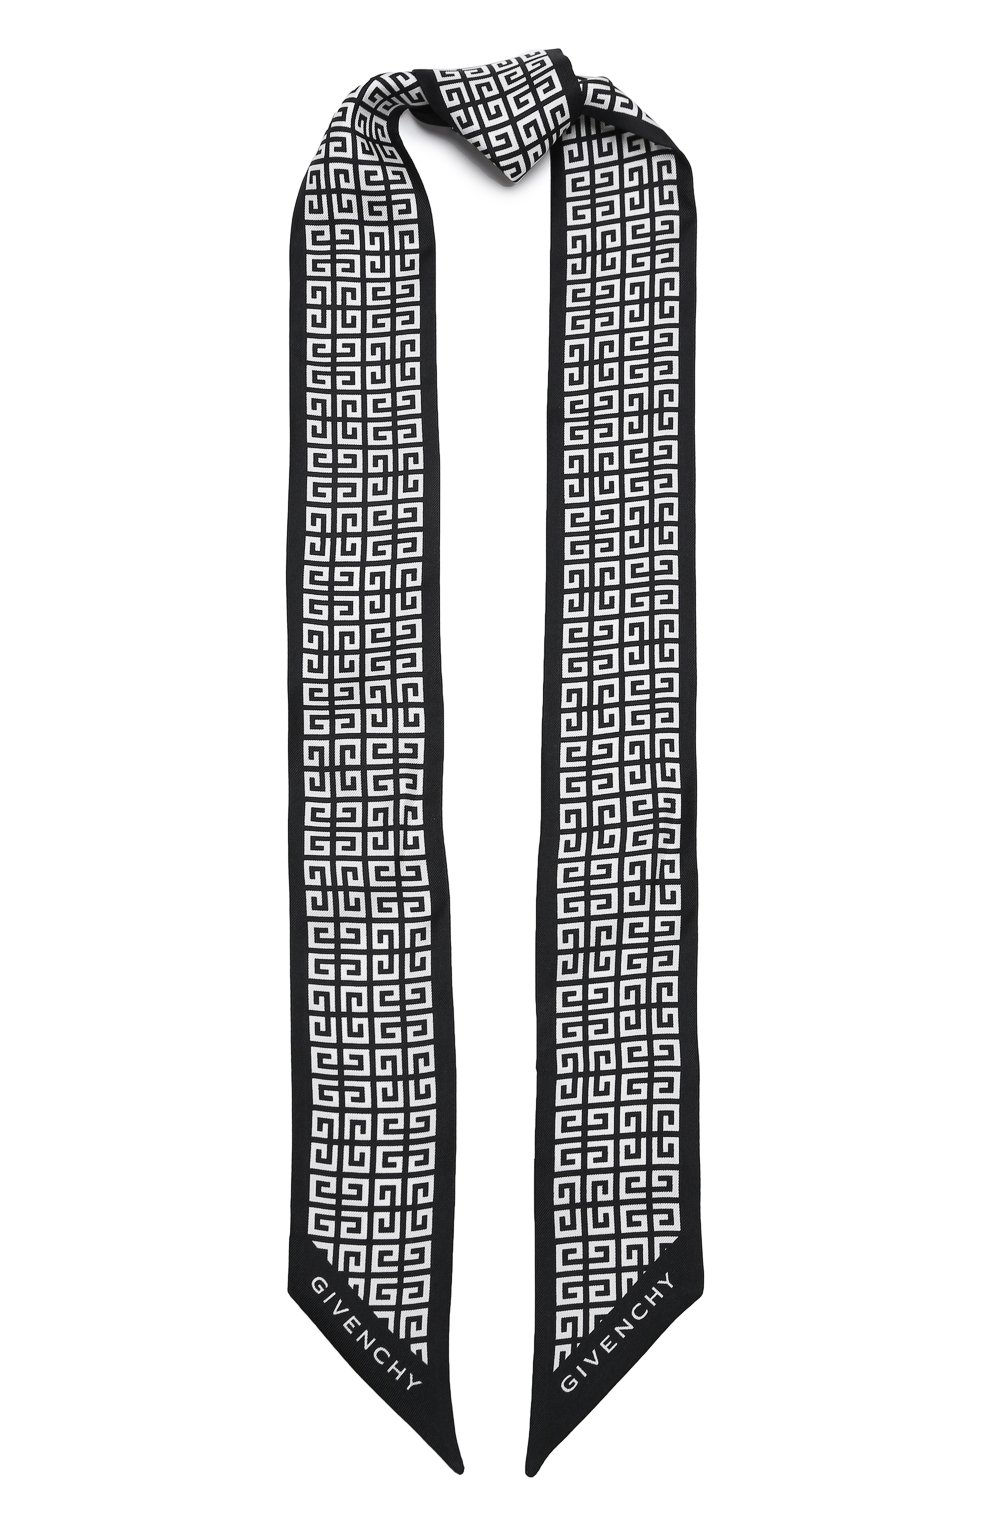 Шарфы Givenchy, Шелковый шарф-бандо Givenchy, Италия, Чёрно-белый, Шелк: 100%;, 13385486  - купить